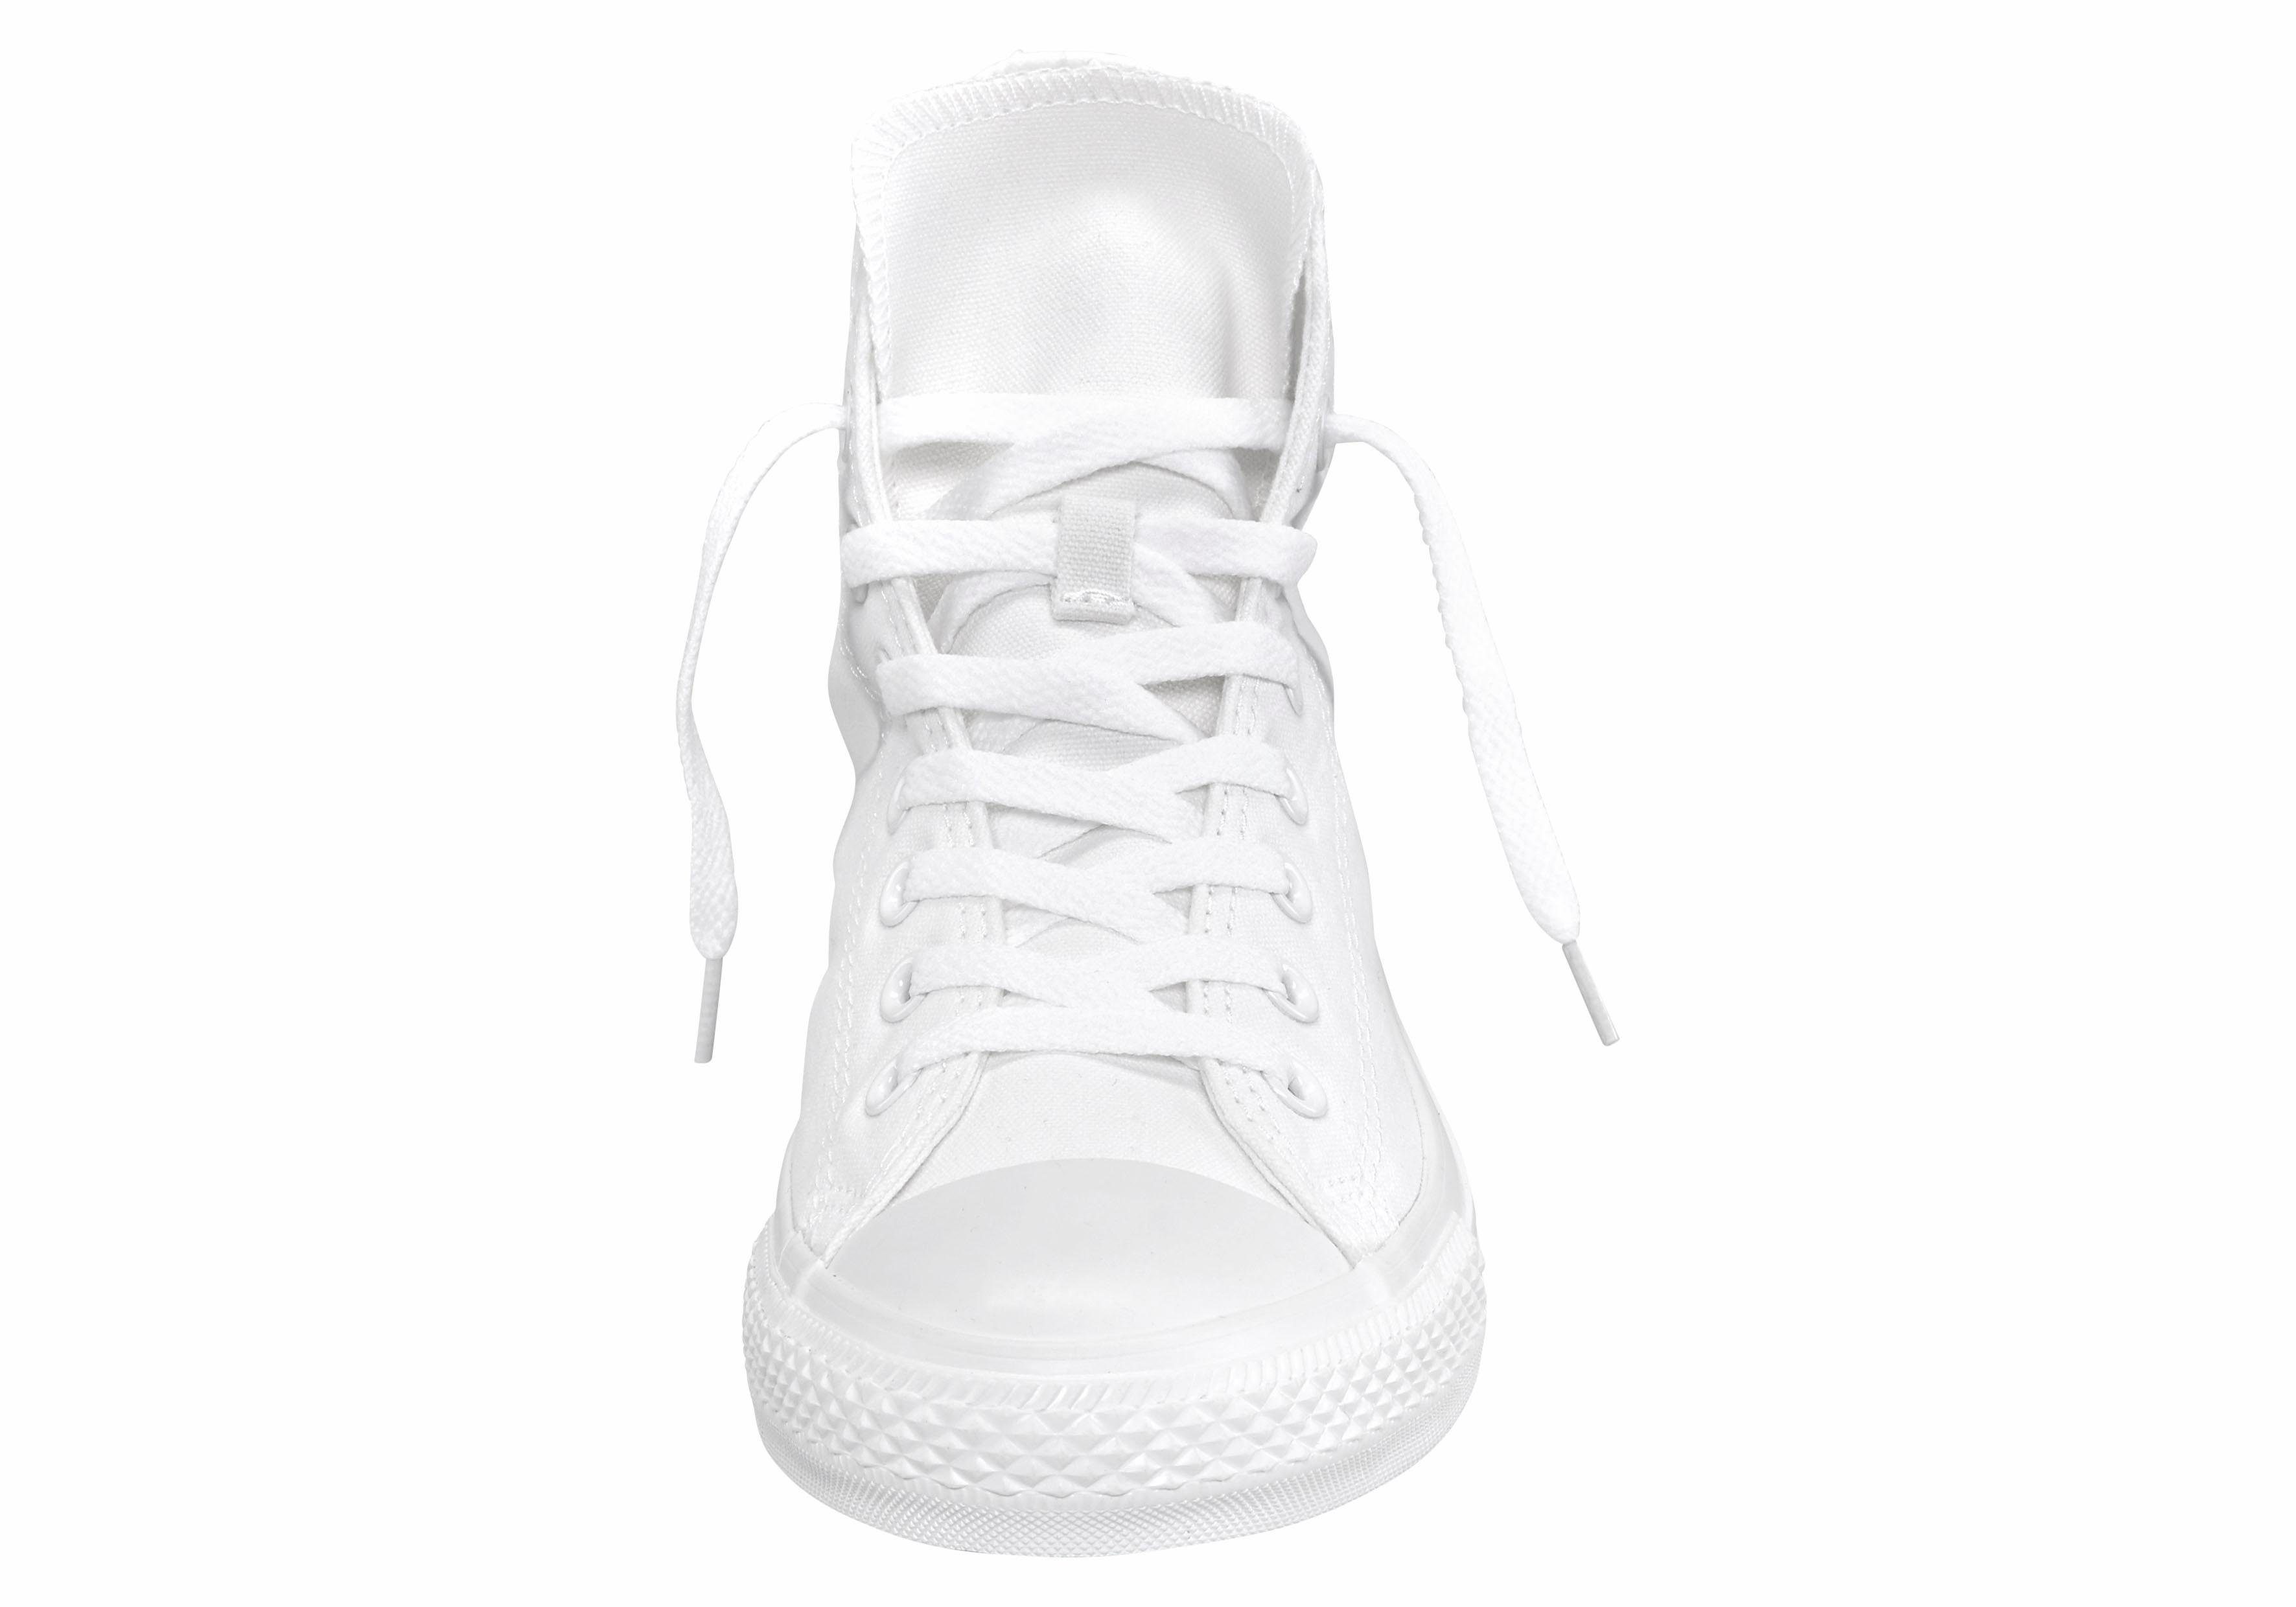 CHUCK HI TAYLOR Mono White-Monochrome STAR ALL Sneaker Converse Unisex